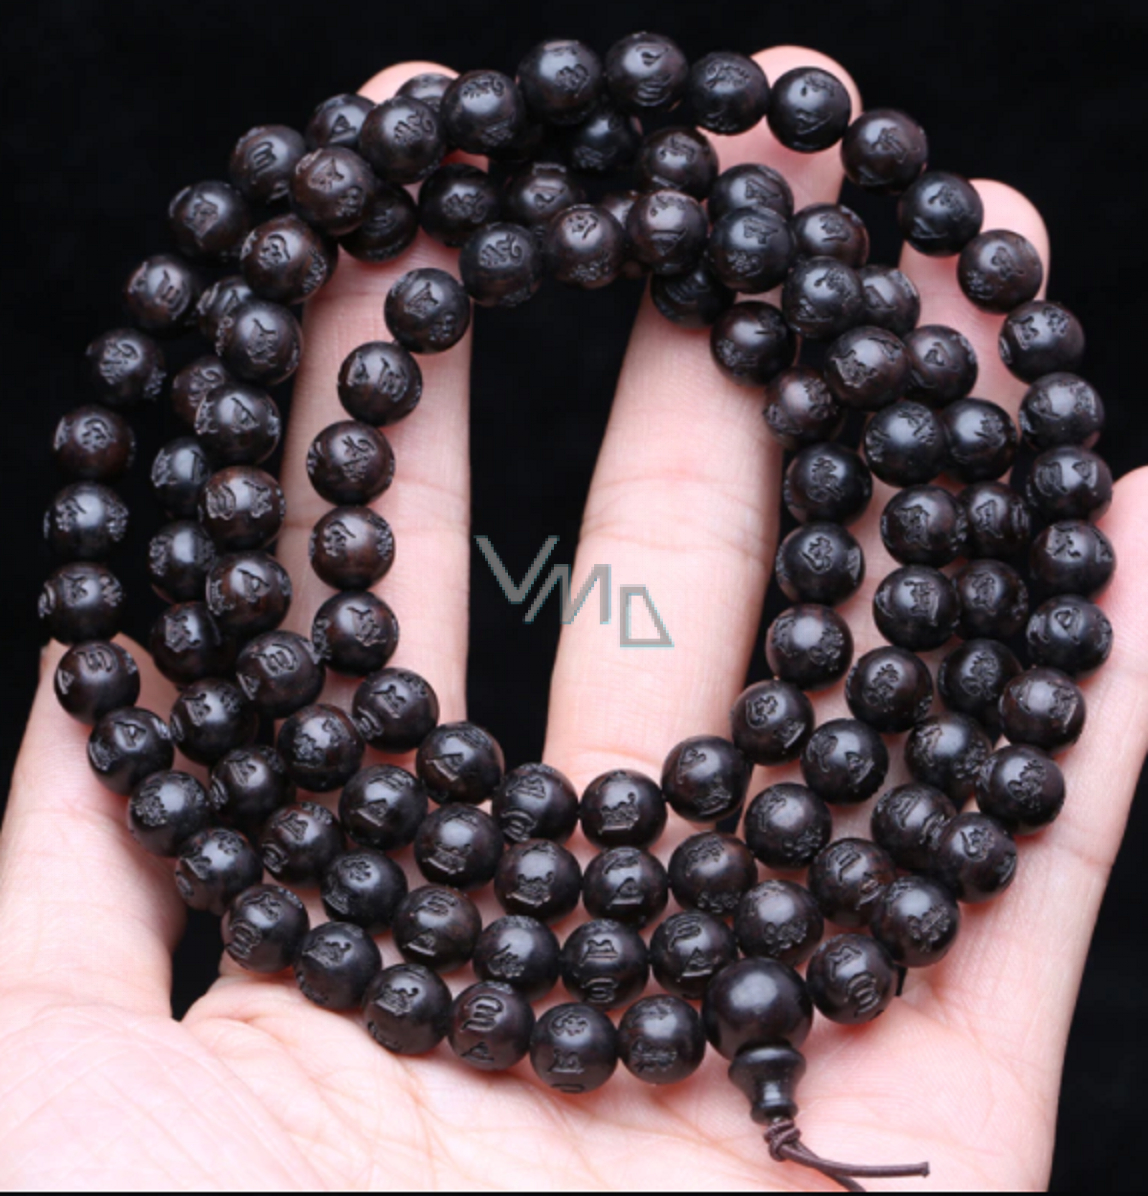 Ebony mala beads meaning